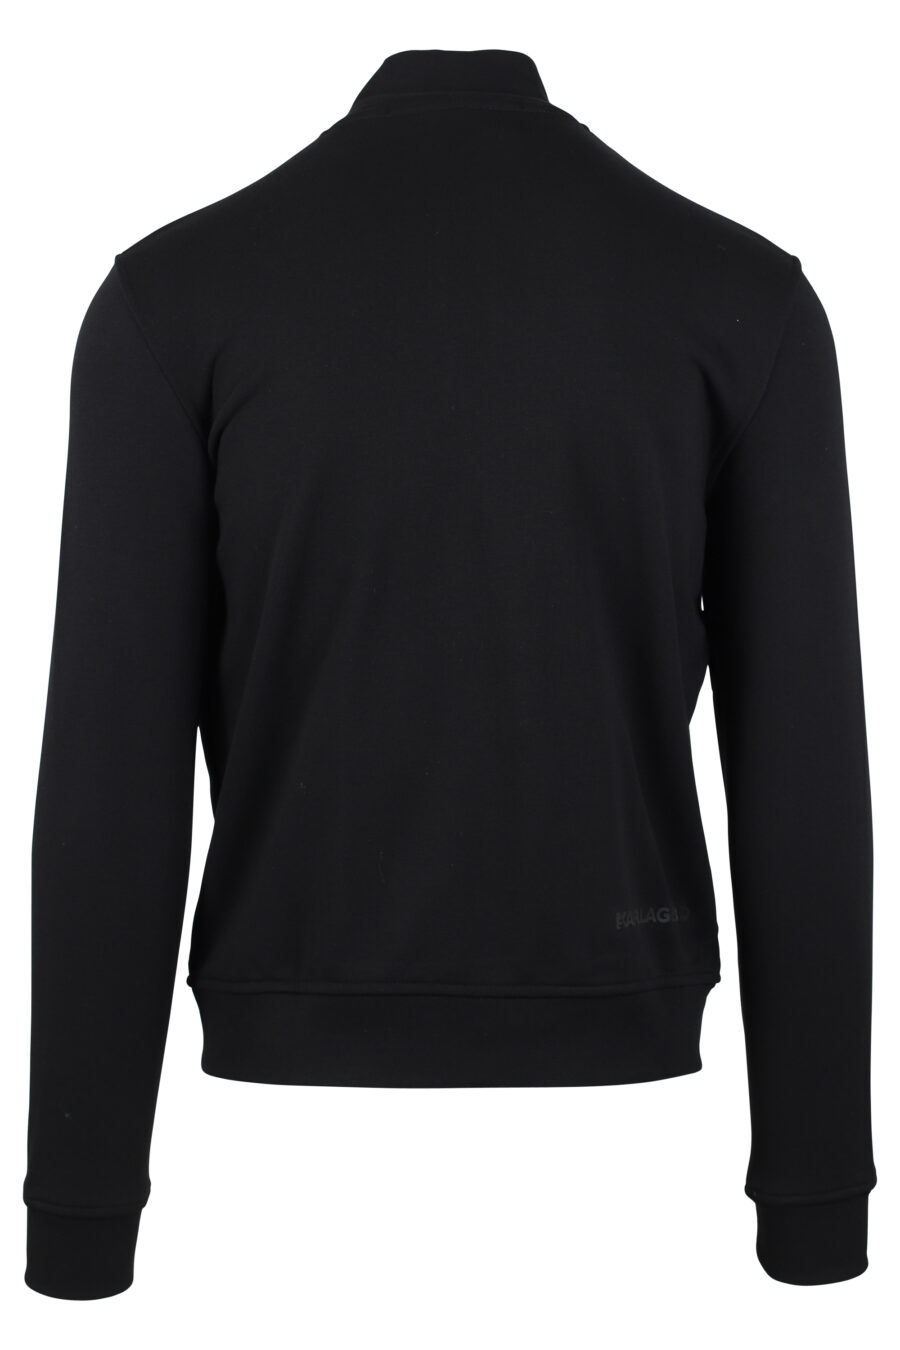 Camisola preta com fecho de correr e logótipo "karl" em silhueta branca - IMG 4629